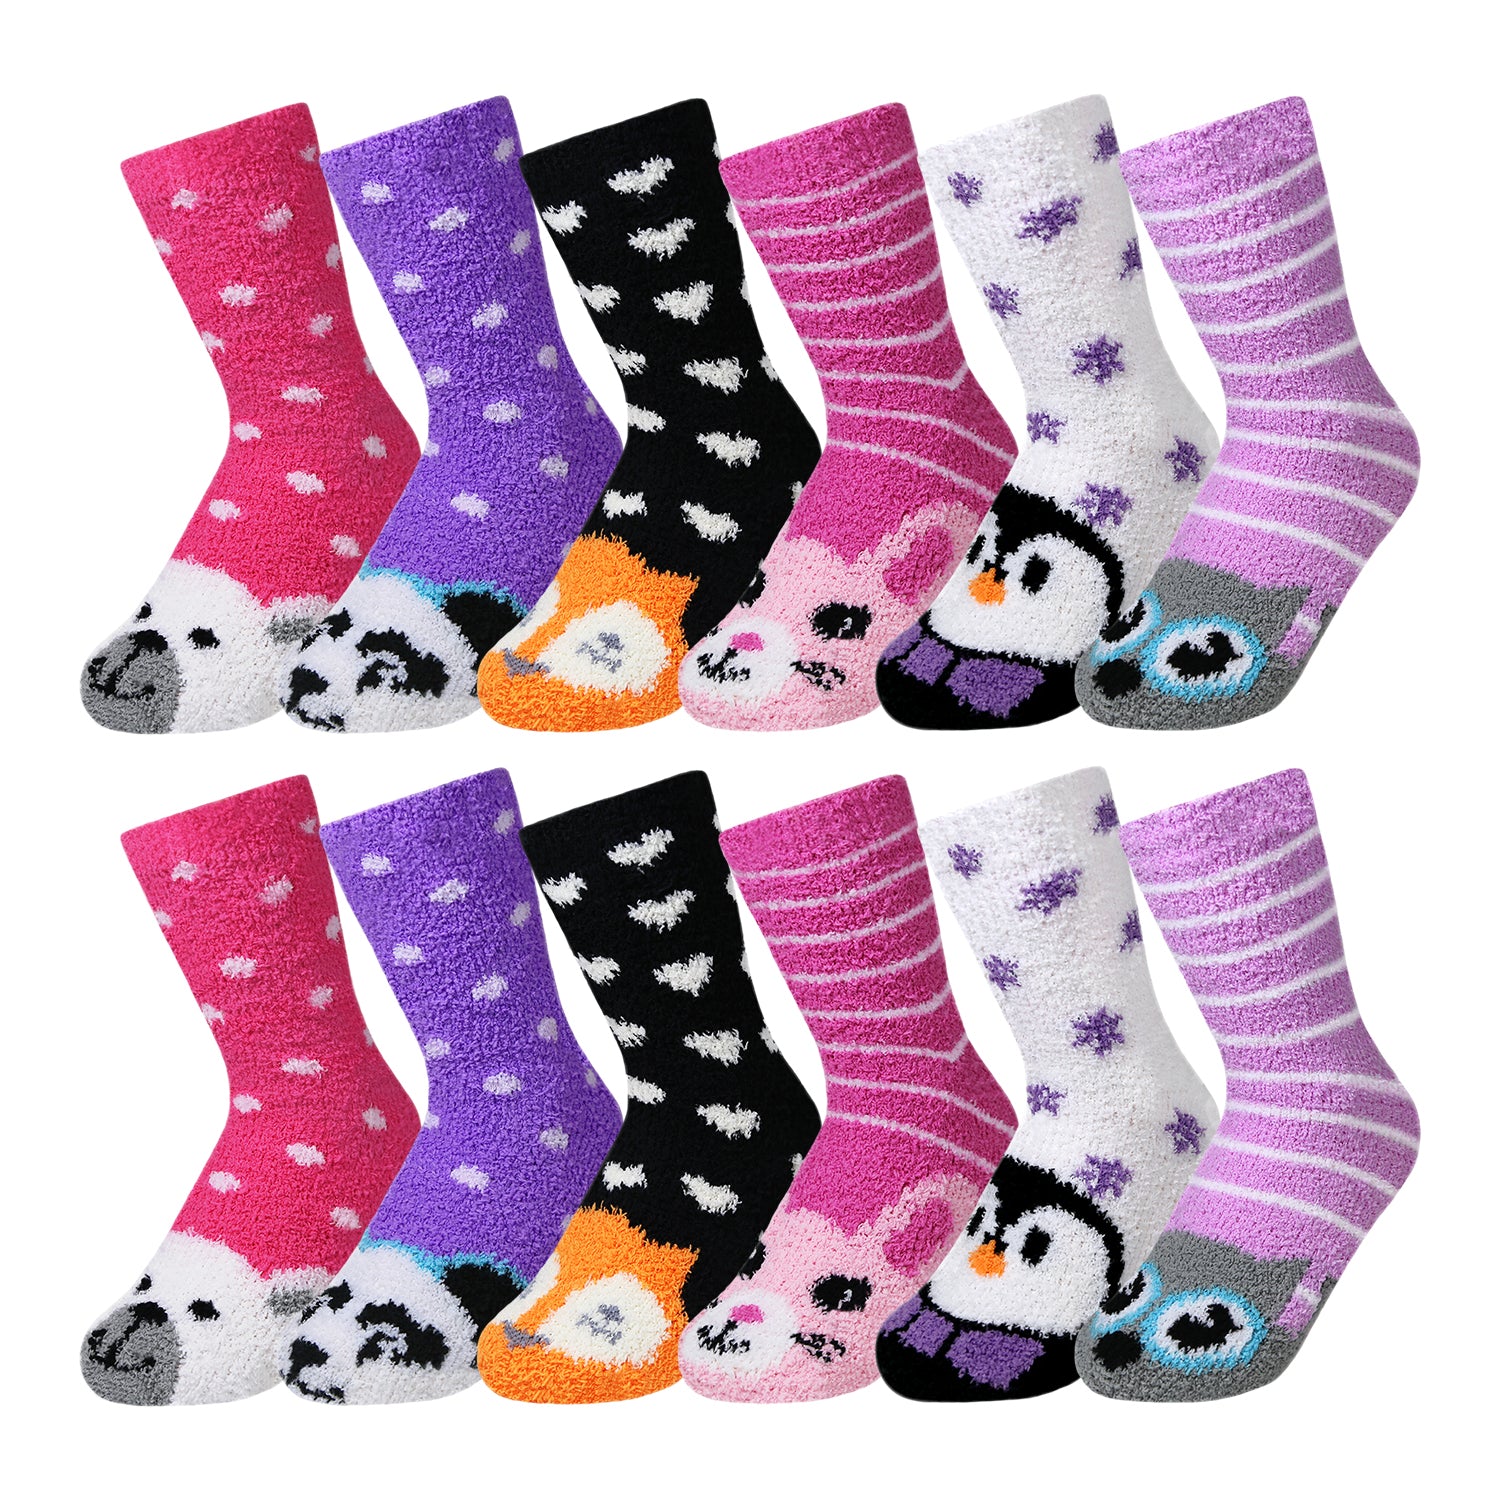 12 Pairs of Women's/Girl's Fuzzy Soft Plush Slipper Socks, Fluffy